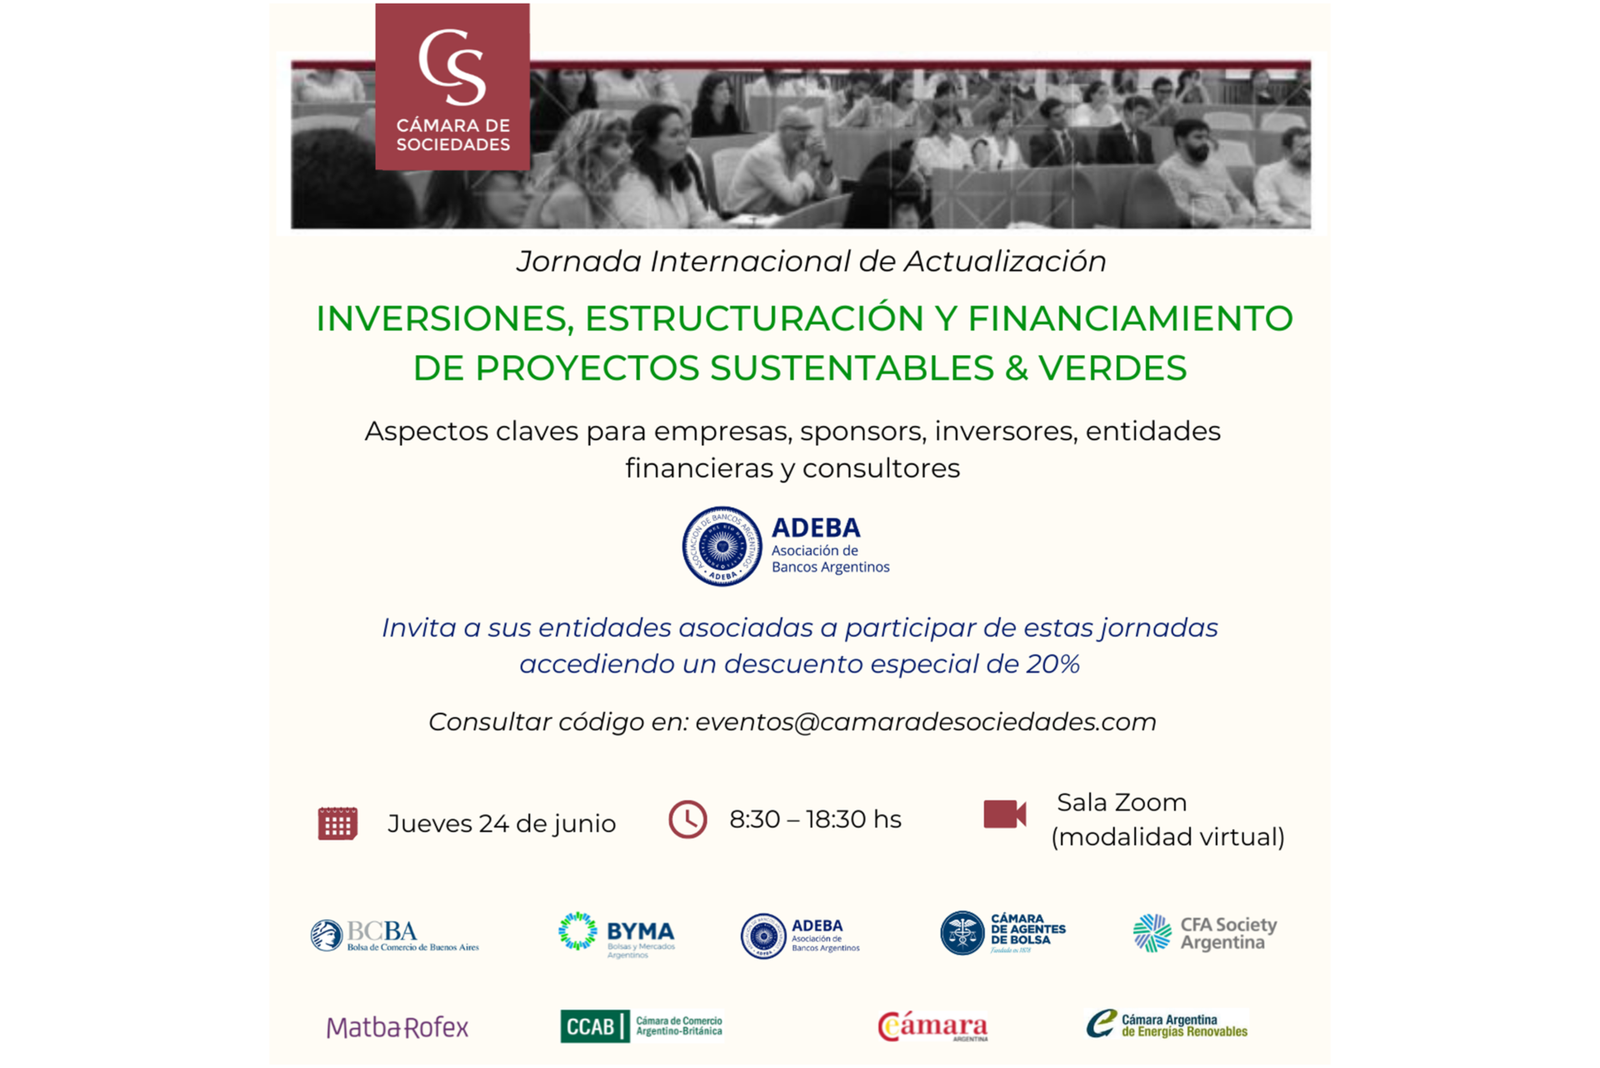 ADEBA auspiciará Jornada sobre Proyectos Sustentables & Verdes